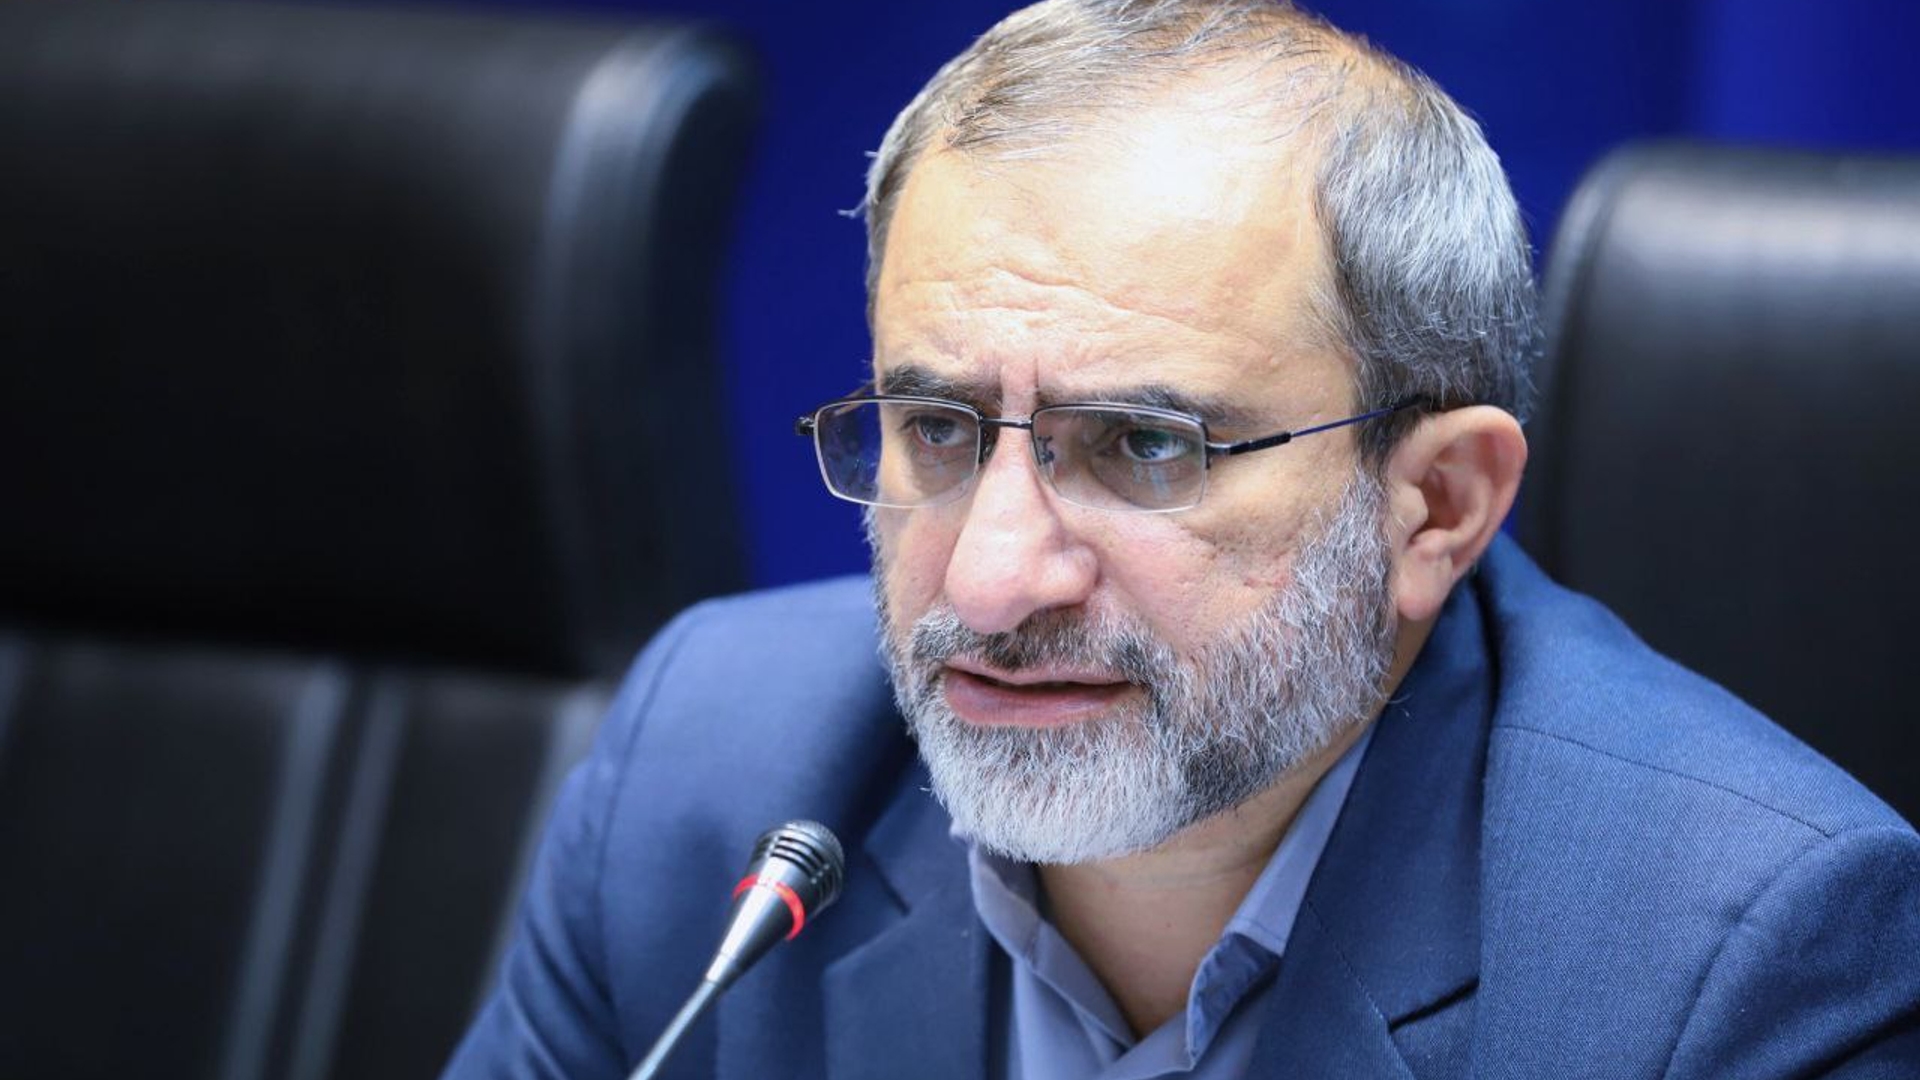 استاندار مرکزی بر وصول درآمدهای قانونی توسط دستگاه‌های استان تاکید کرد